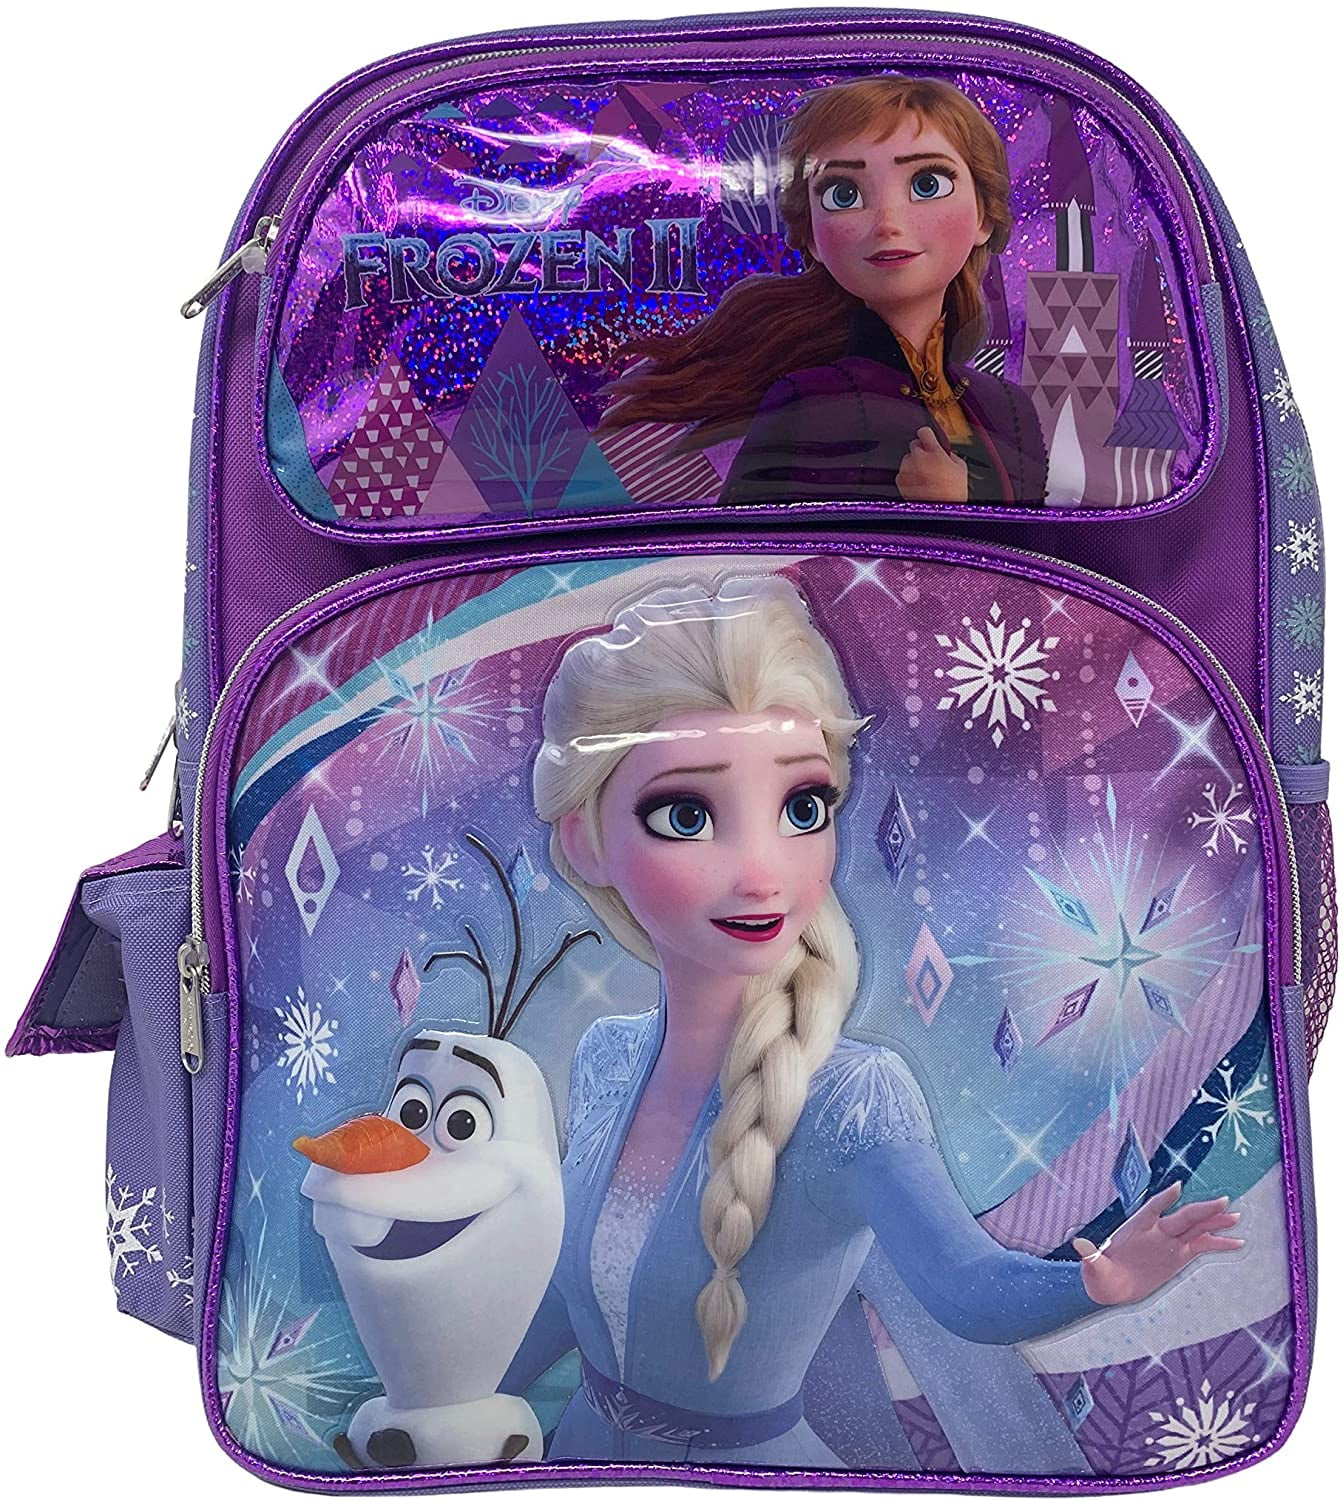 Disney Frozen 2 Sleeping Bag Elsa Ana Outdoor Indoor Girls Travel Camping Kids 